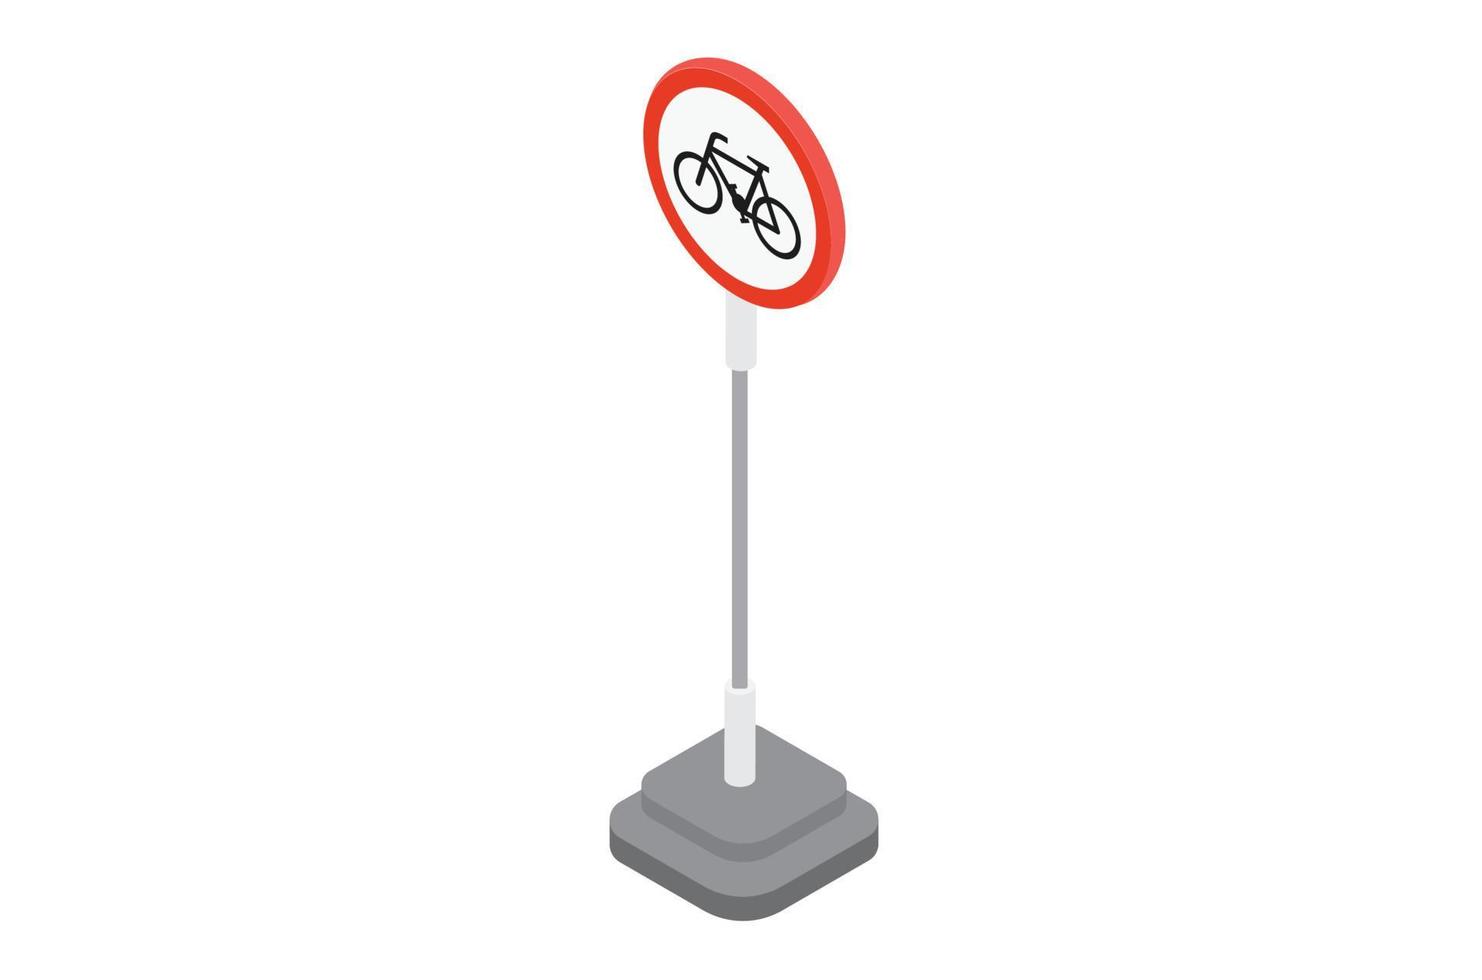 Ilustracion de No bicicleta firmar en blanco fondo, vector 3d isométrica adecuado para diagramas, infografía, y otro gráfico relacionado bienes